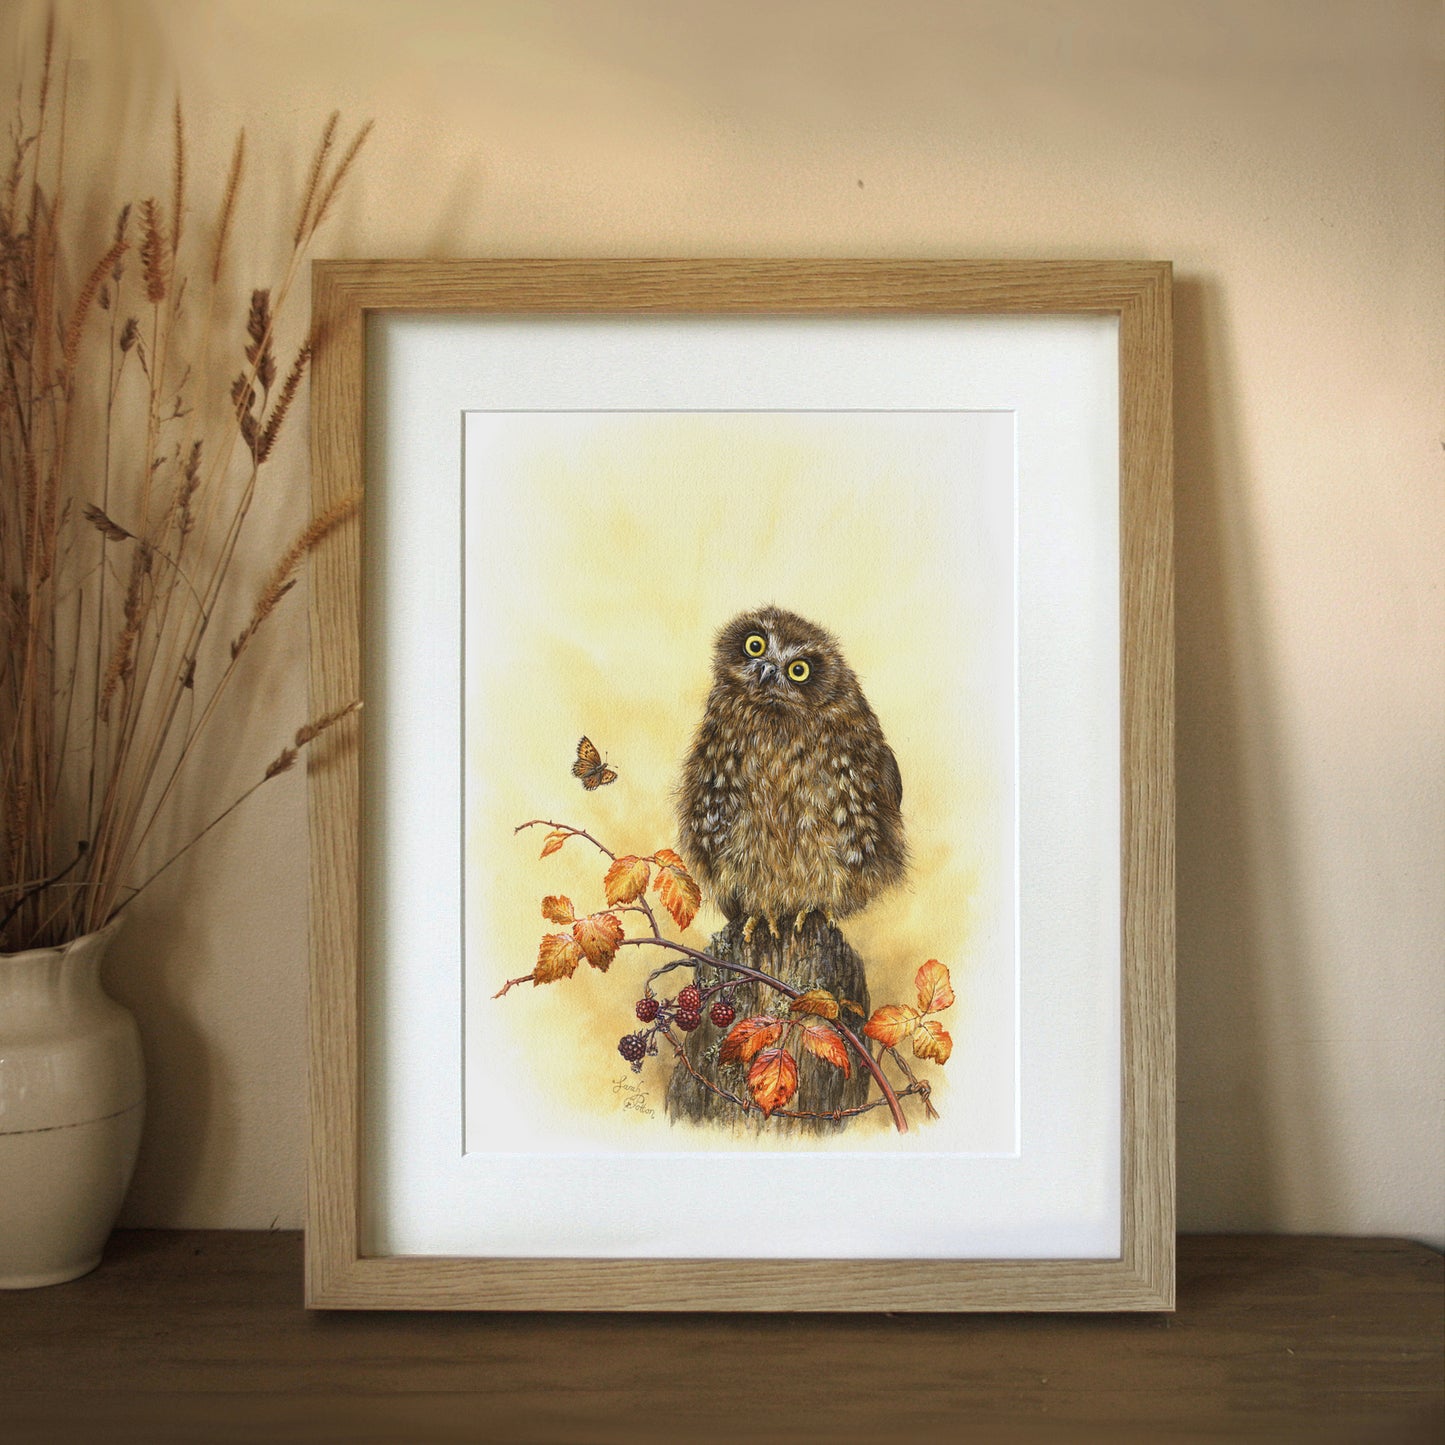 Framed Print of Baby Owl - Art for Children's Room